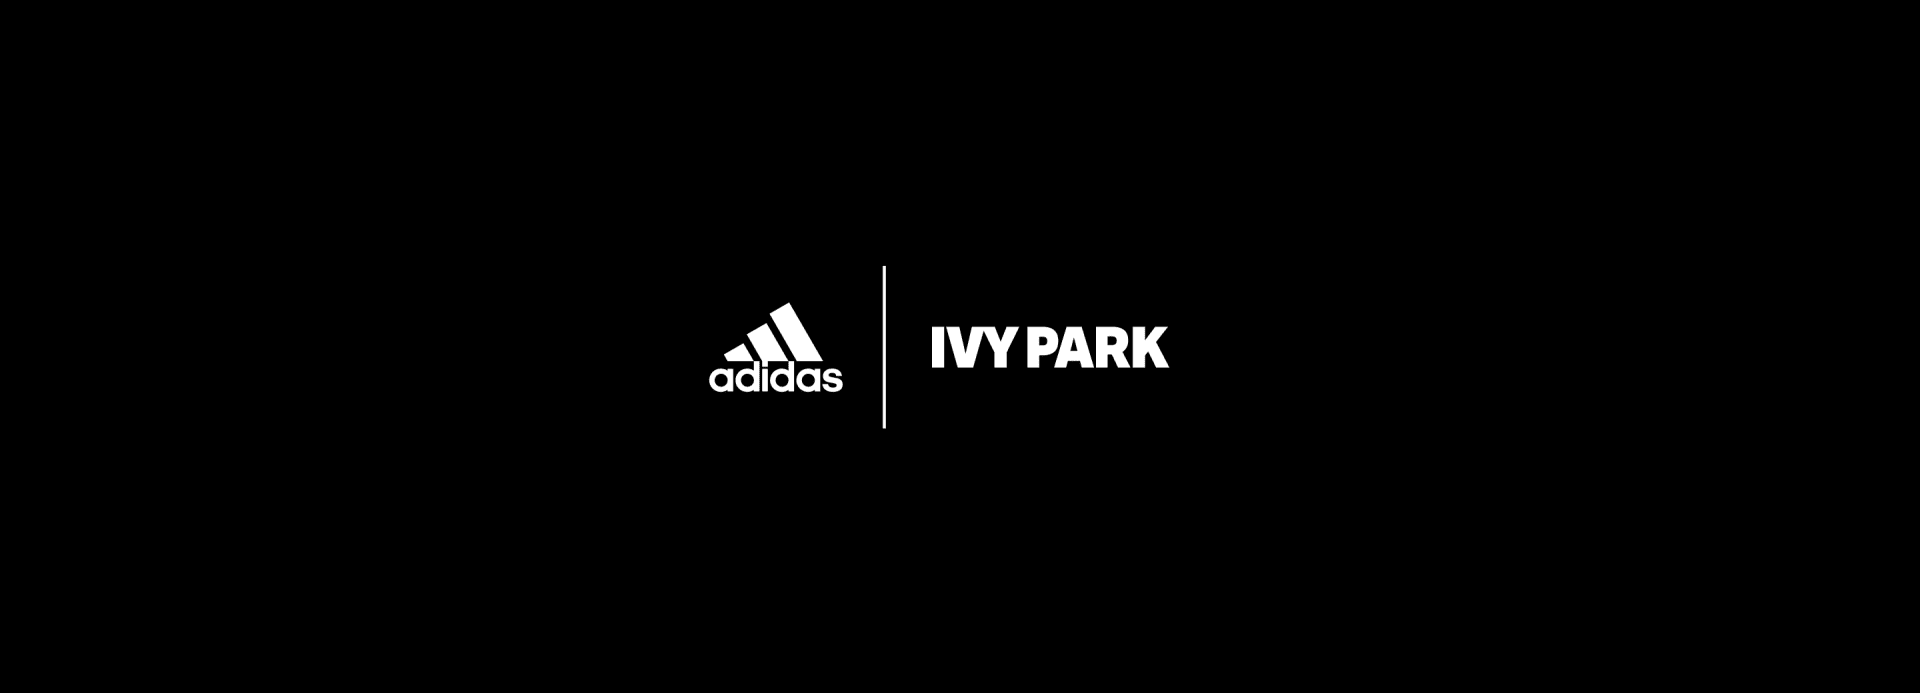 adidas começará a vender IVY PARK no Brasil a partir da meia-noite